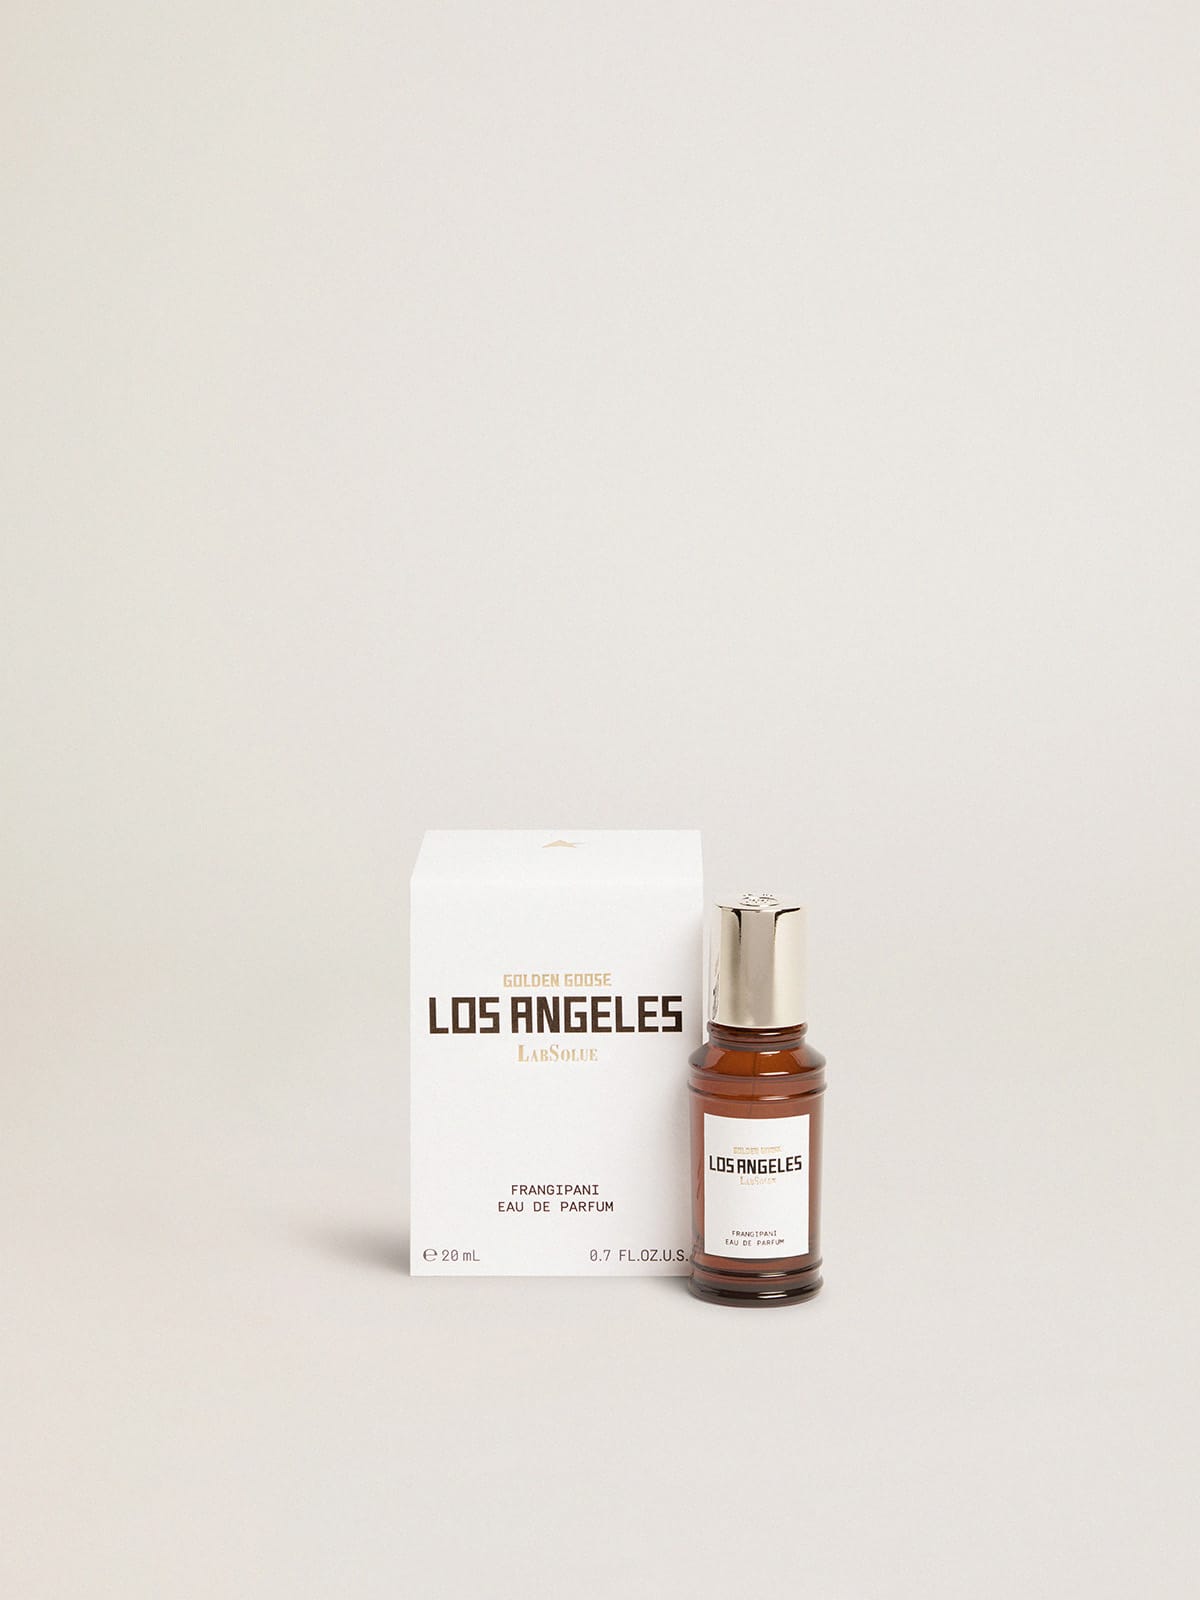 Golden Goose - Los Angeles Essence Frangipani Eau de Parfum 20 ml in 